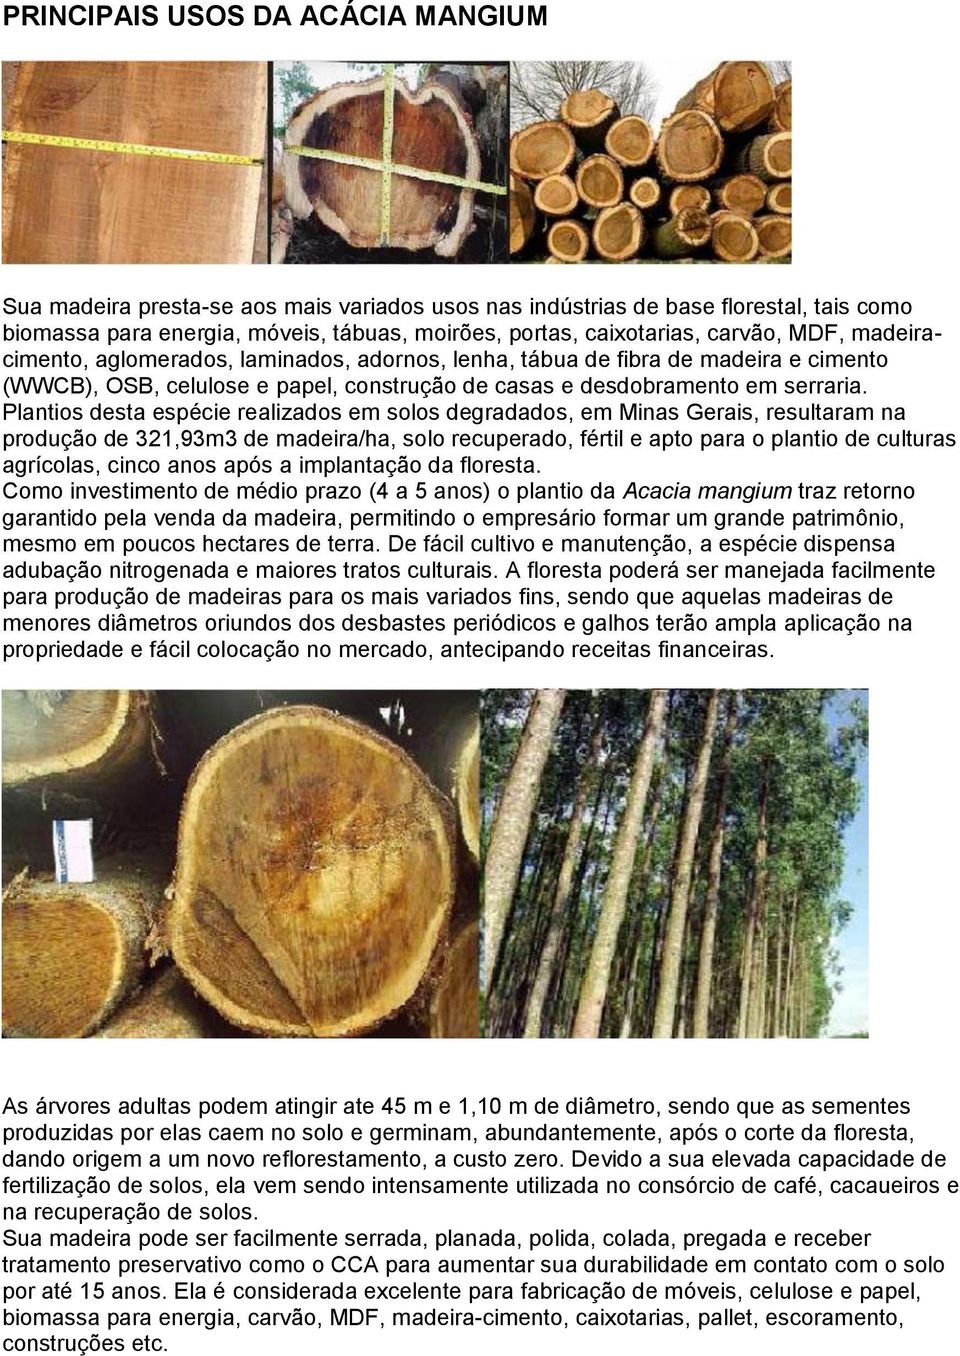 Plantios desta espécie realizados em solos degradados, em Minas Gerais, resultaram na produção de 321,93m3 de madeira/ha, solo recuperado, fértil e apto para o plantio de culturas agrícolas, cinco